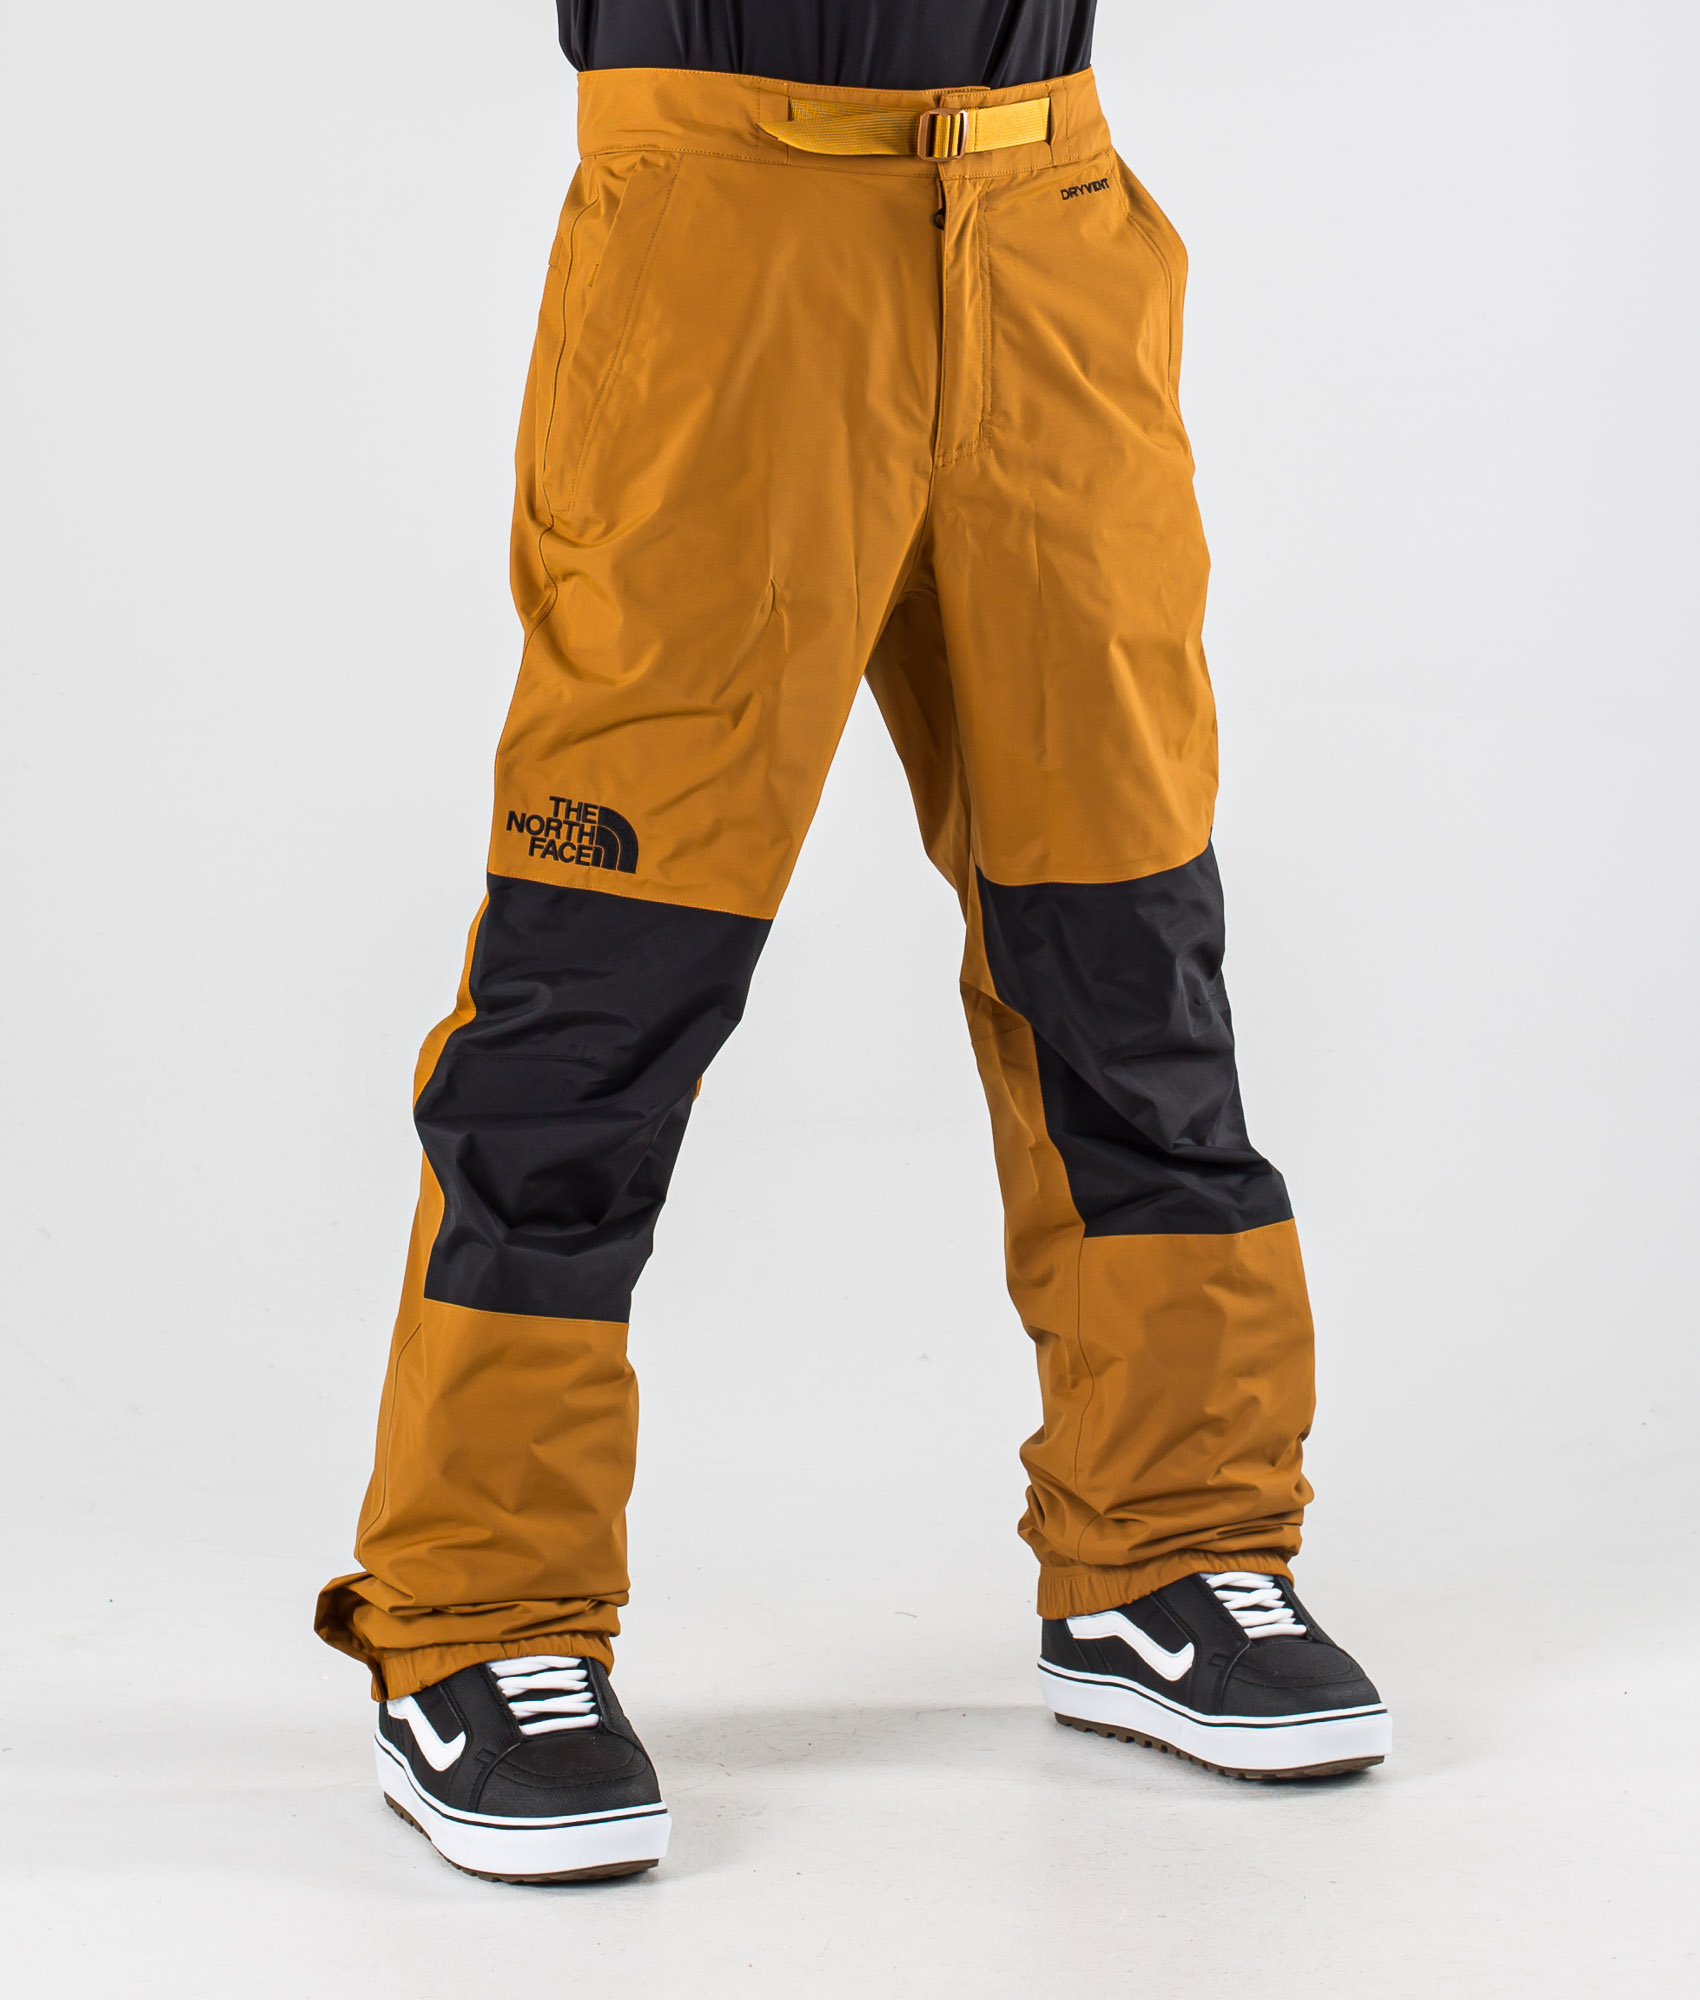 north face snowboard pants